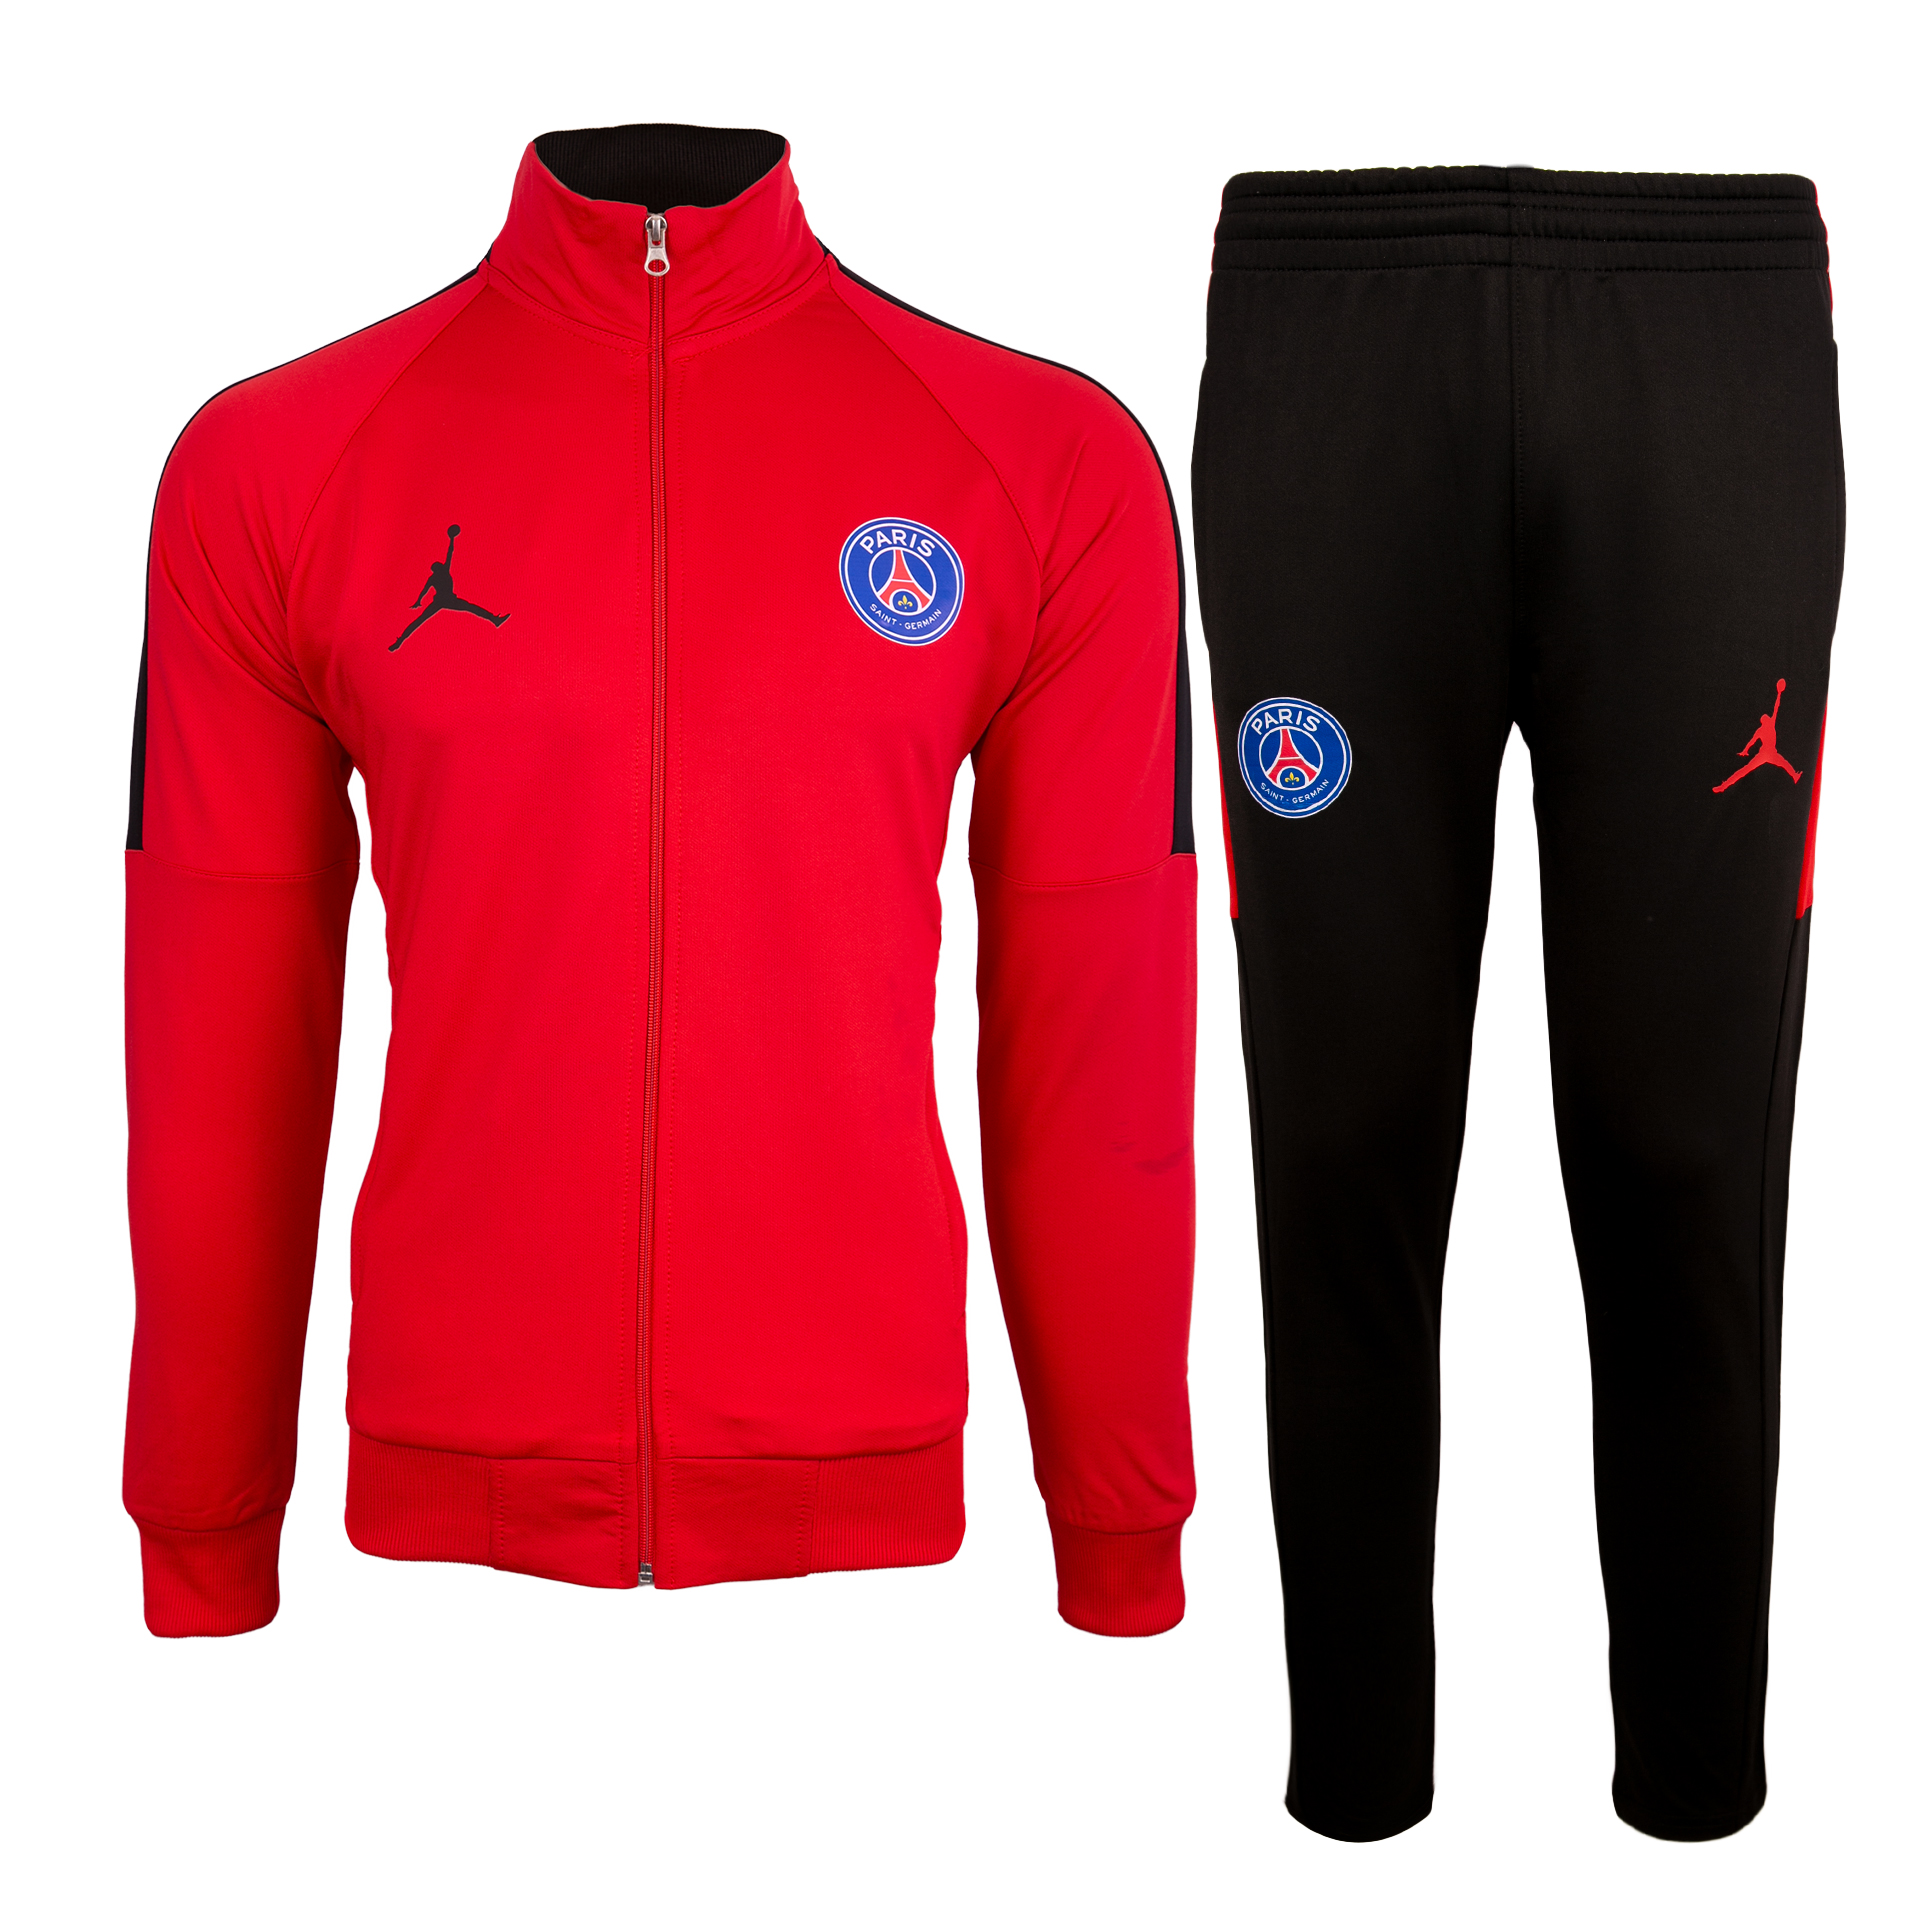 ست گرمکن و شلوار ورزشی مردانه طرح پاریسن ژرمن کد20-2019 رنگ قرمز